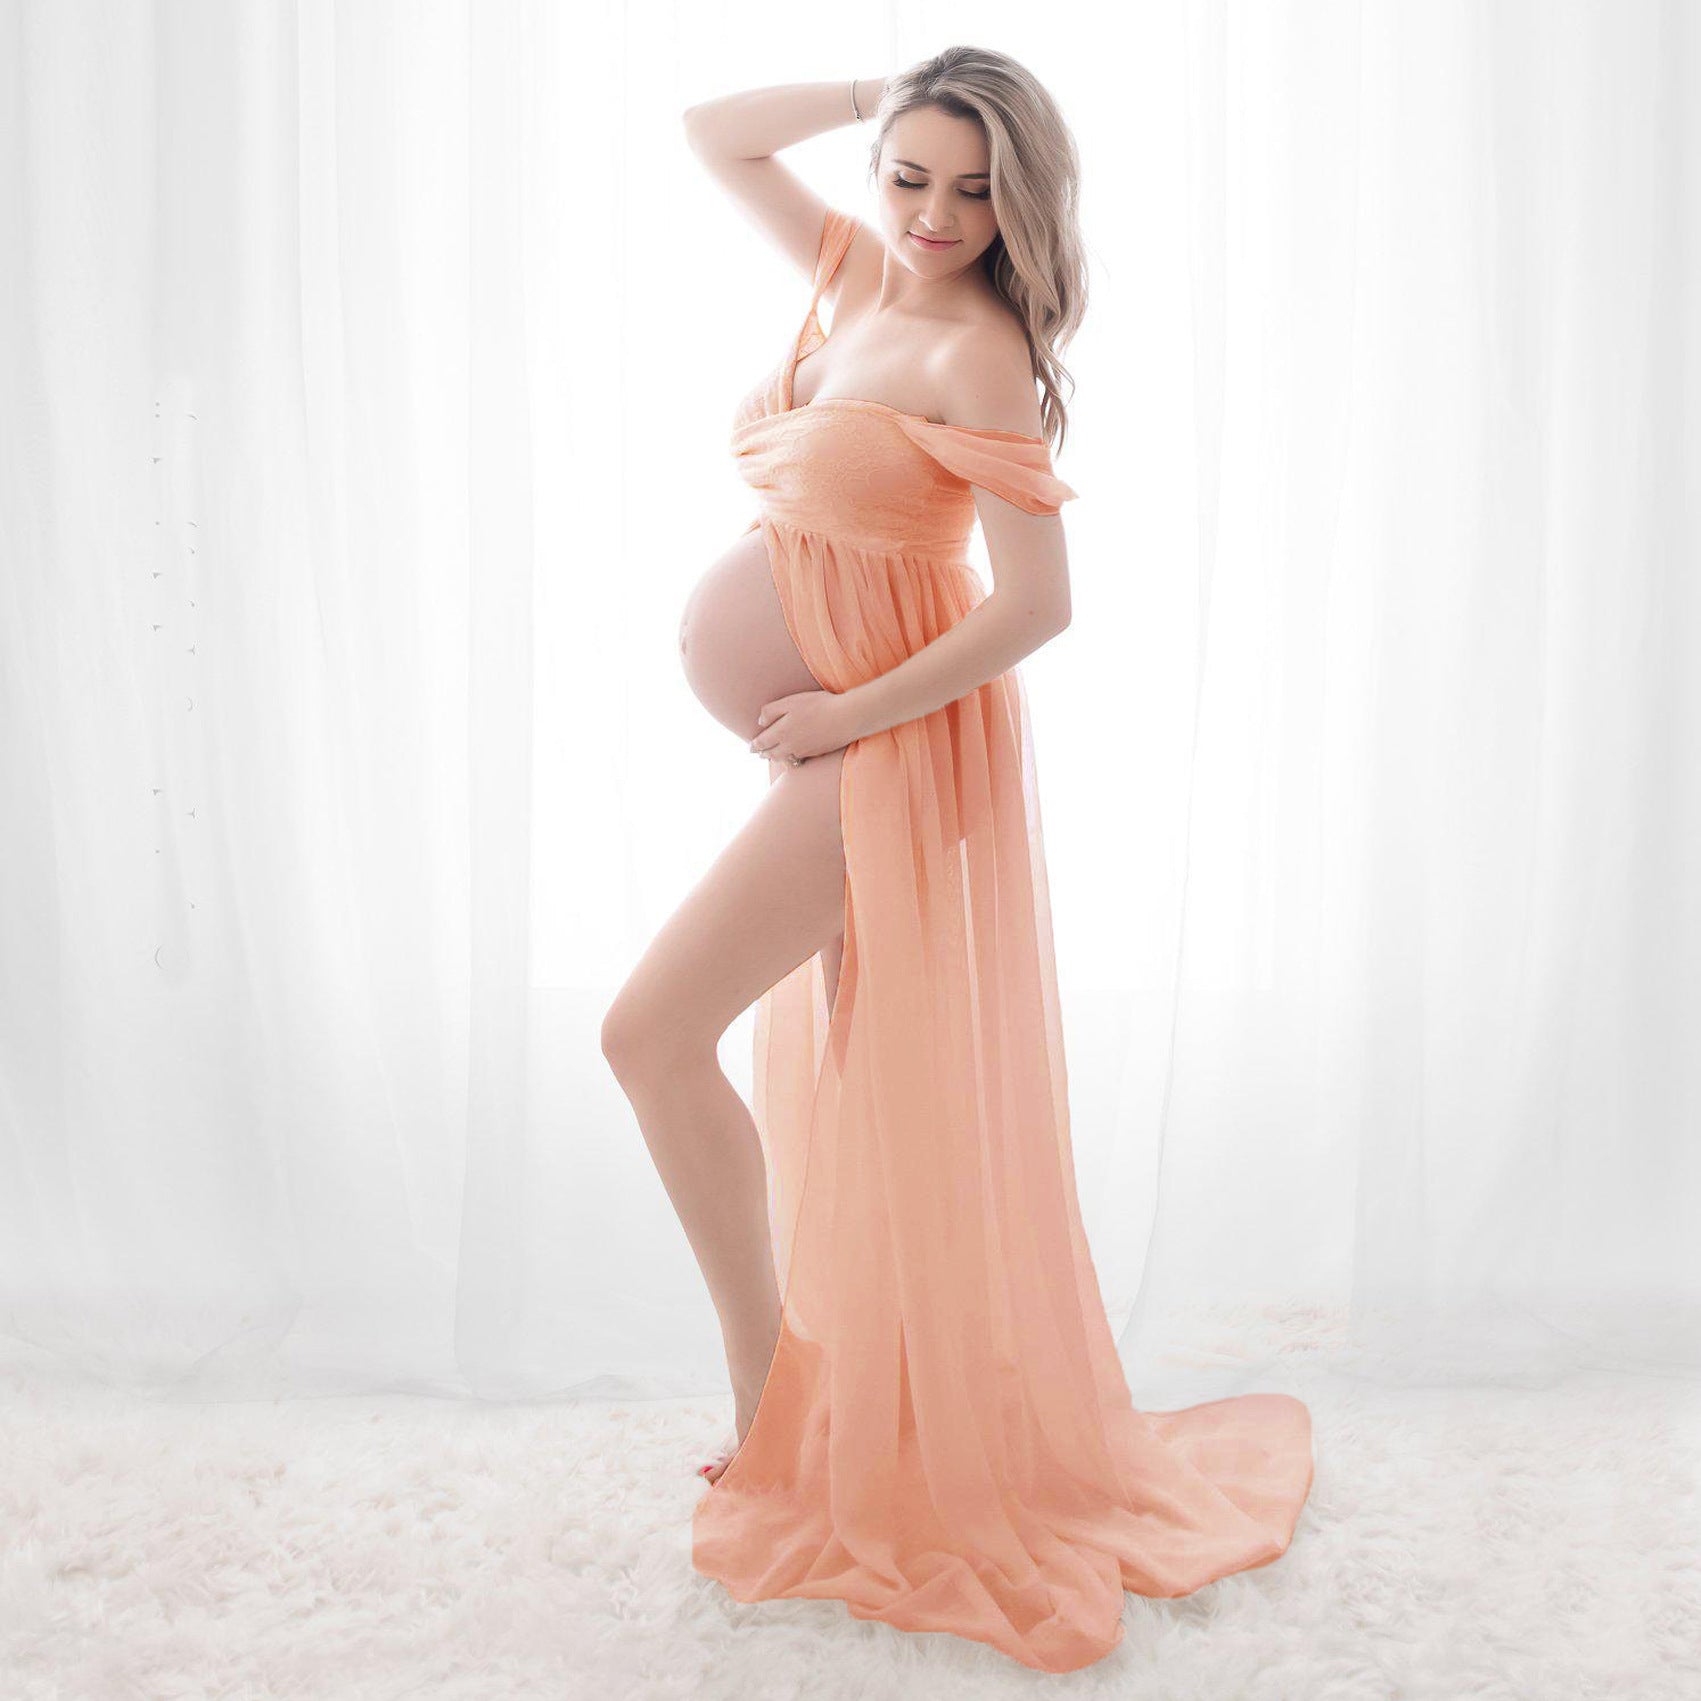 Pregnant Women’s Fashion Dress